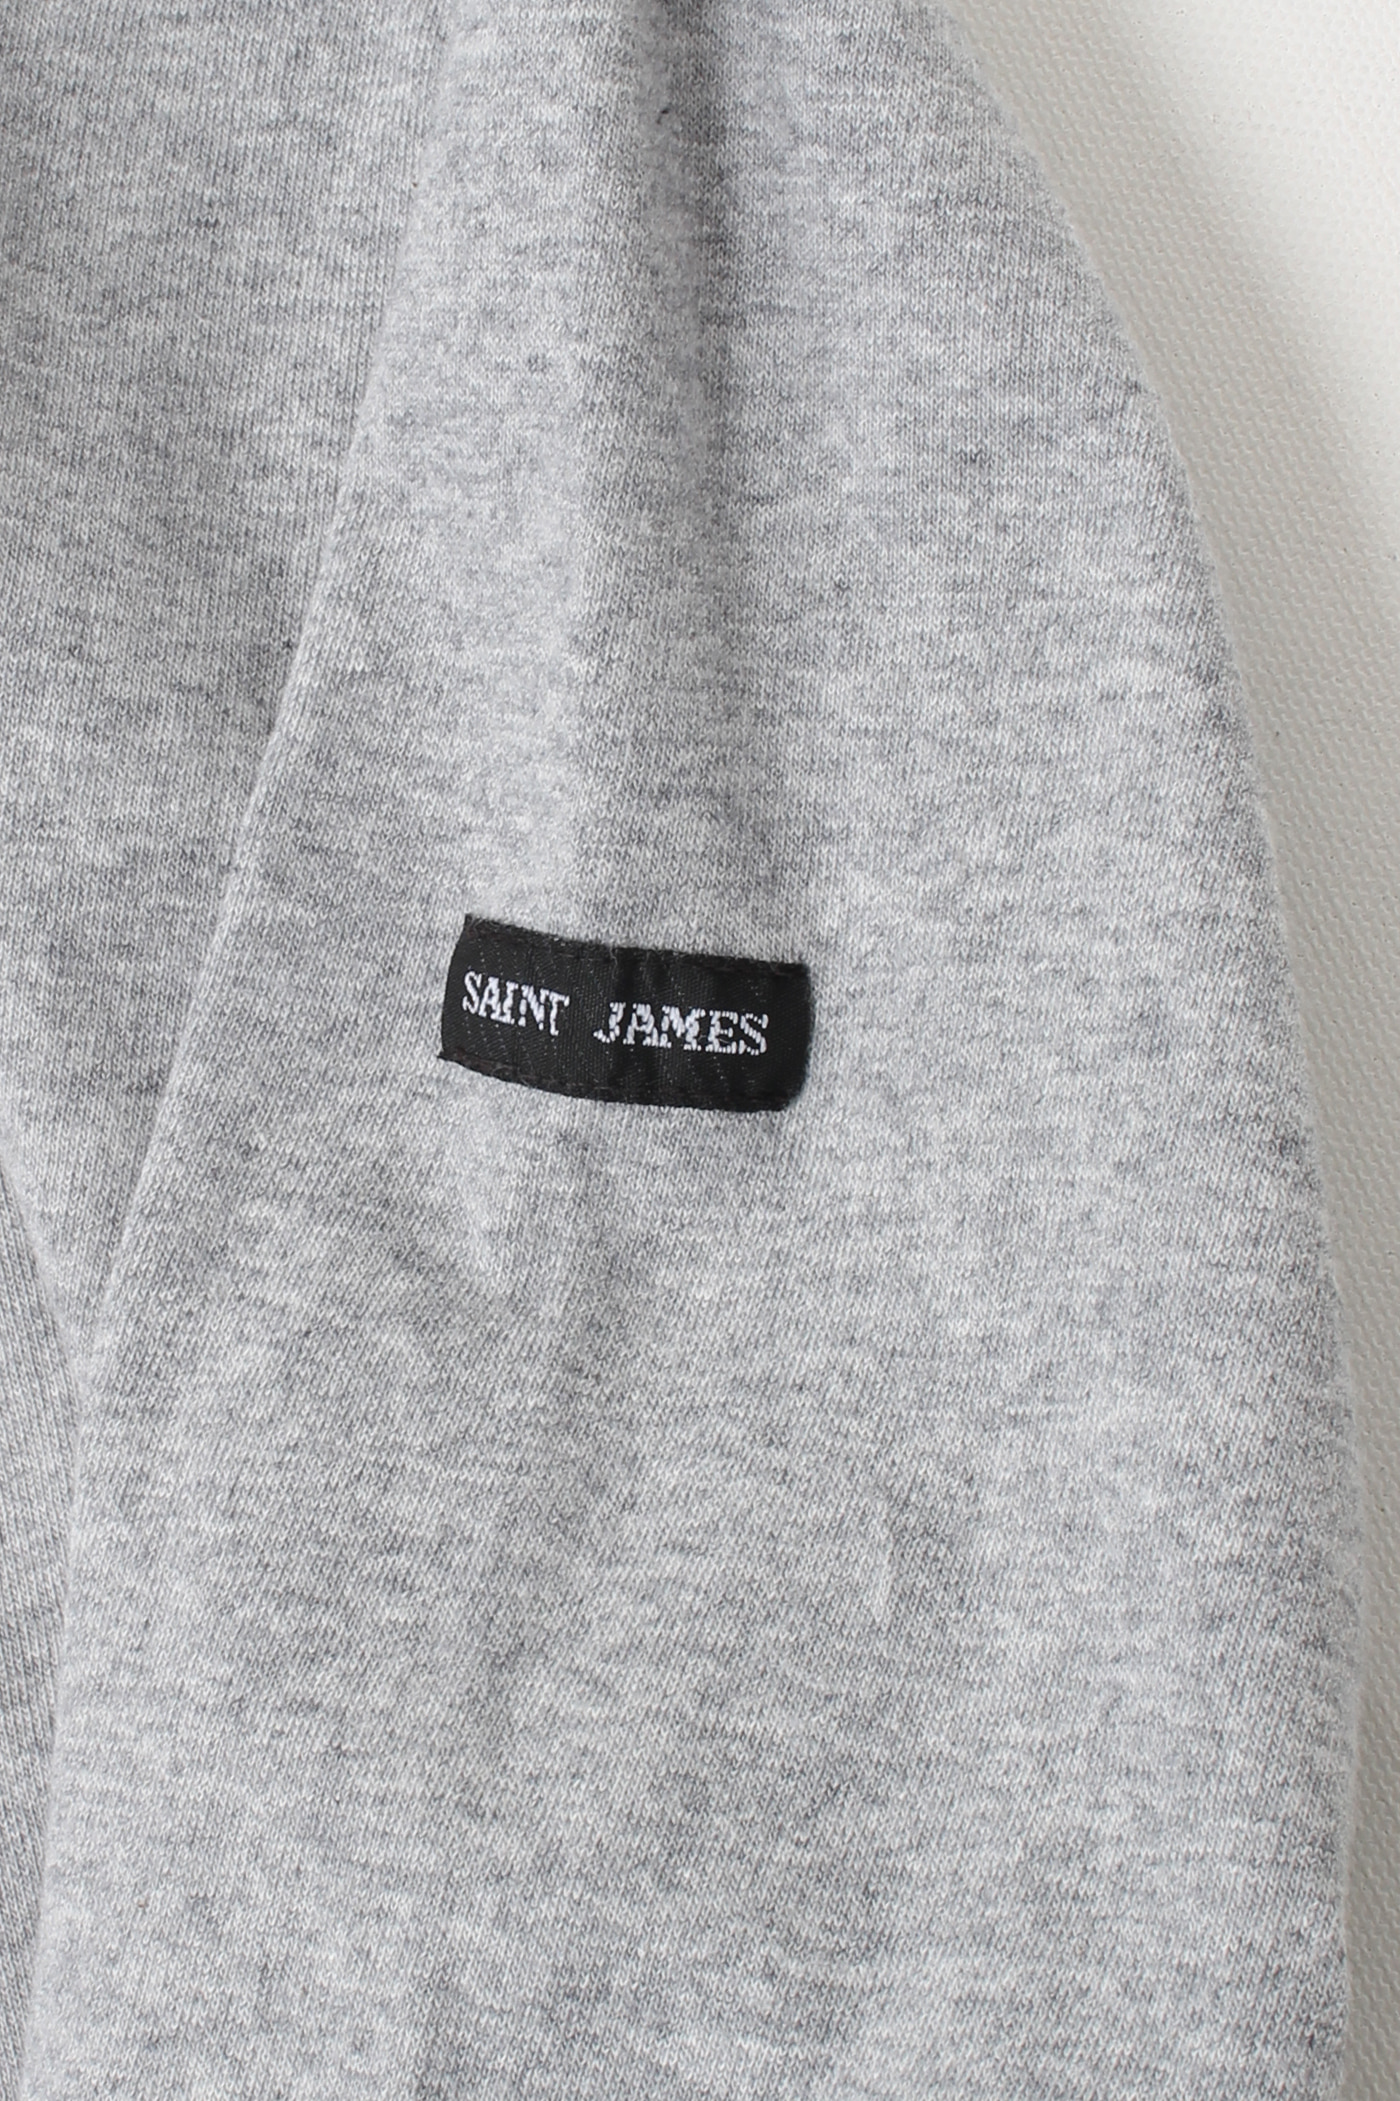 SAINT JAMES L/S(38)